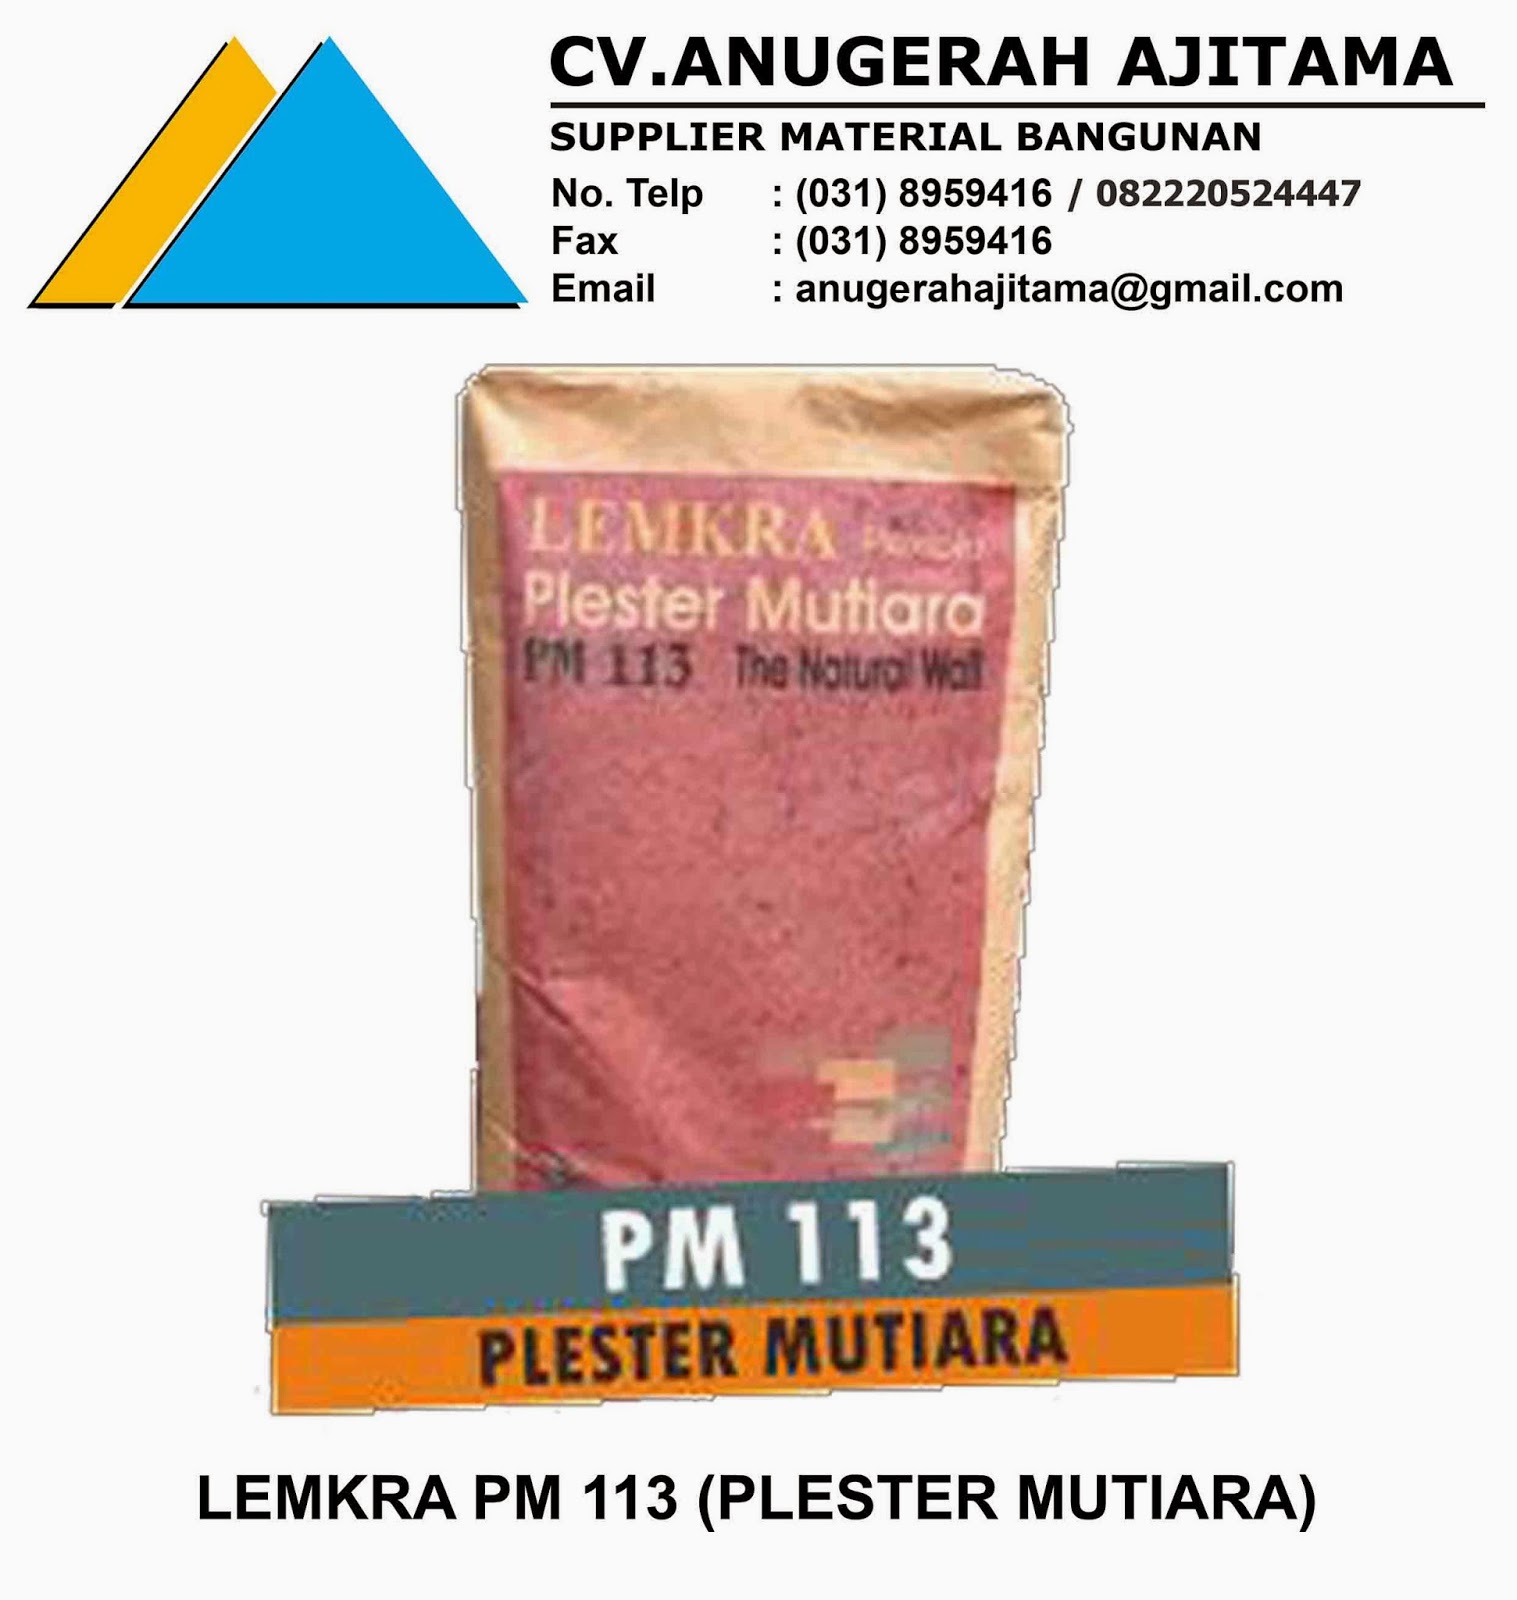 LEMKRA PM 113 (PLESTER MUTIARA)